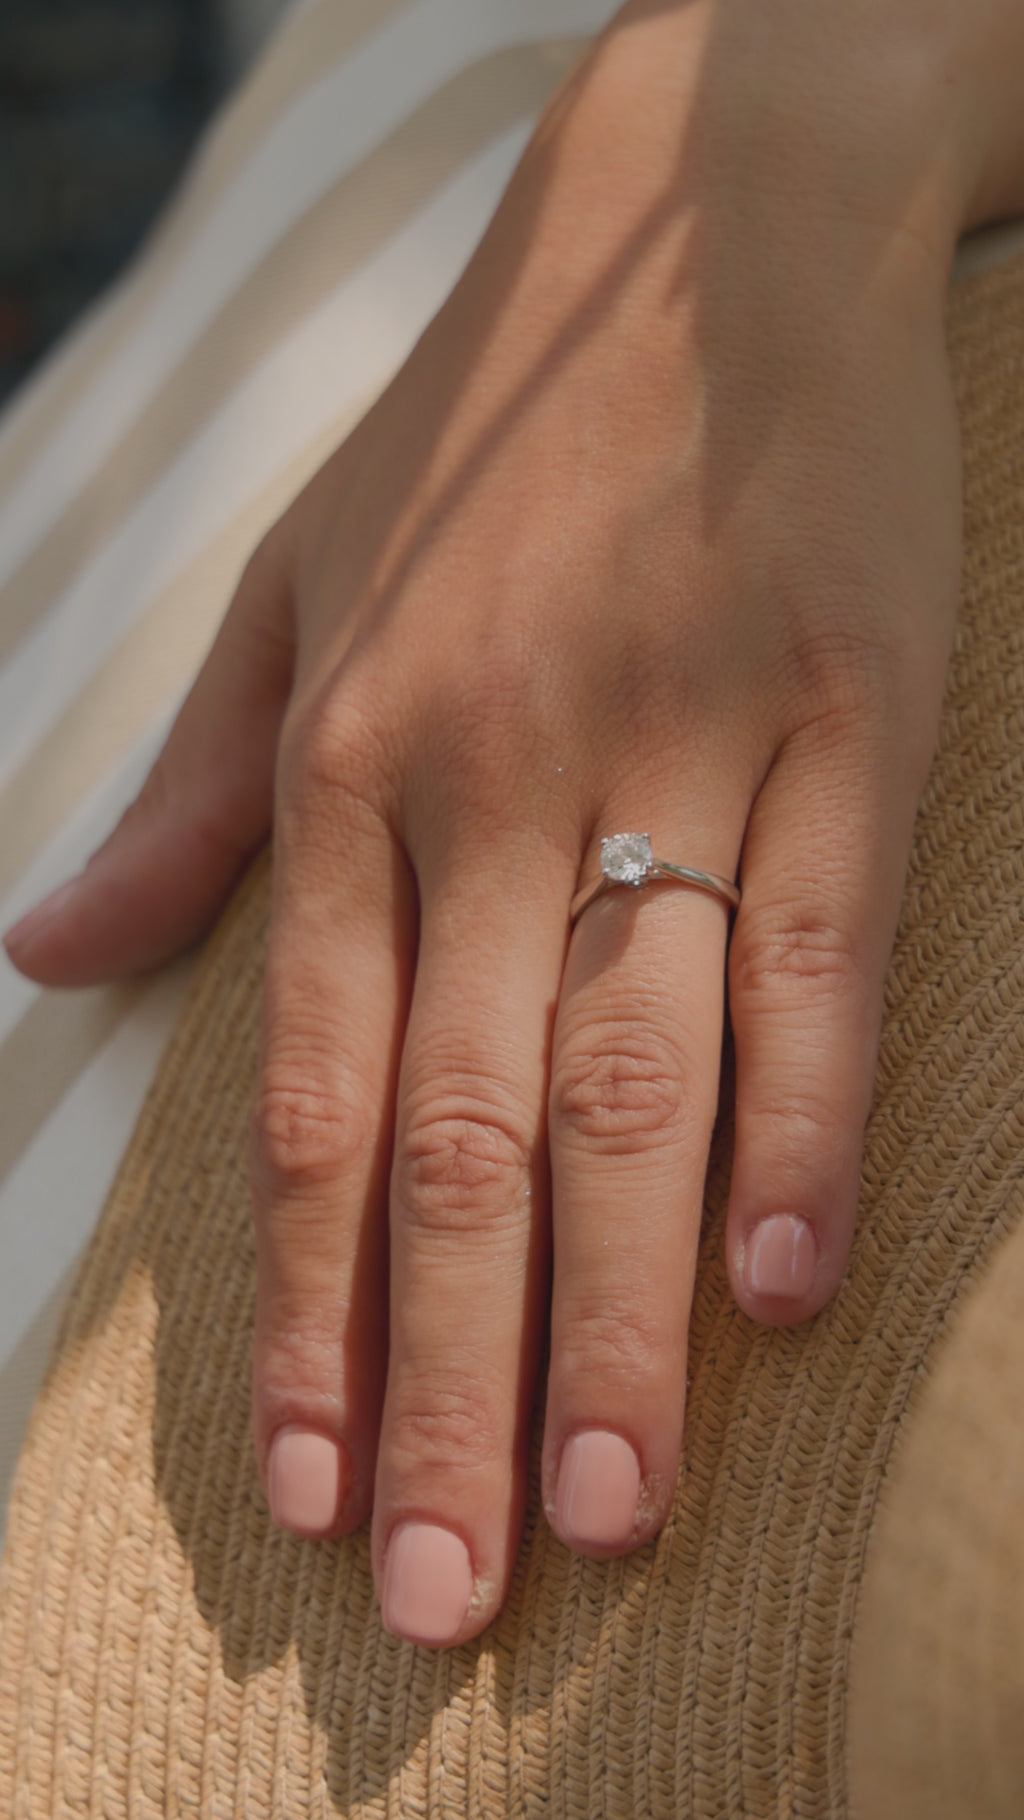 Λευκόχρυσο μονόπετρο δαχτυλίδι με διαμάντι και καστόνι που αγκαλιάζει την πέτρα με τέσσερα δόντια, φορεμένο σε γυναικείο χέρι.